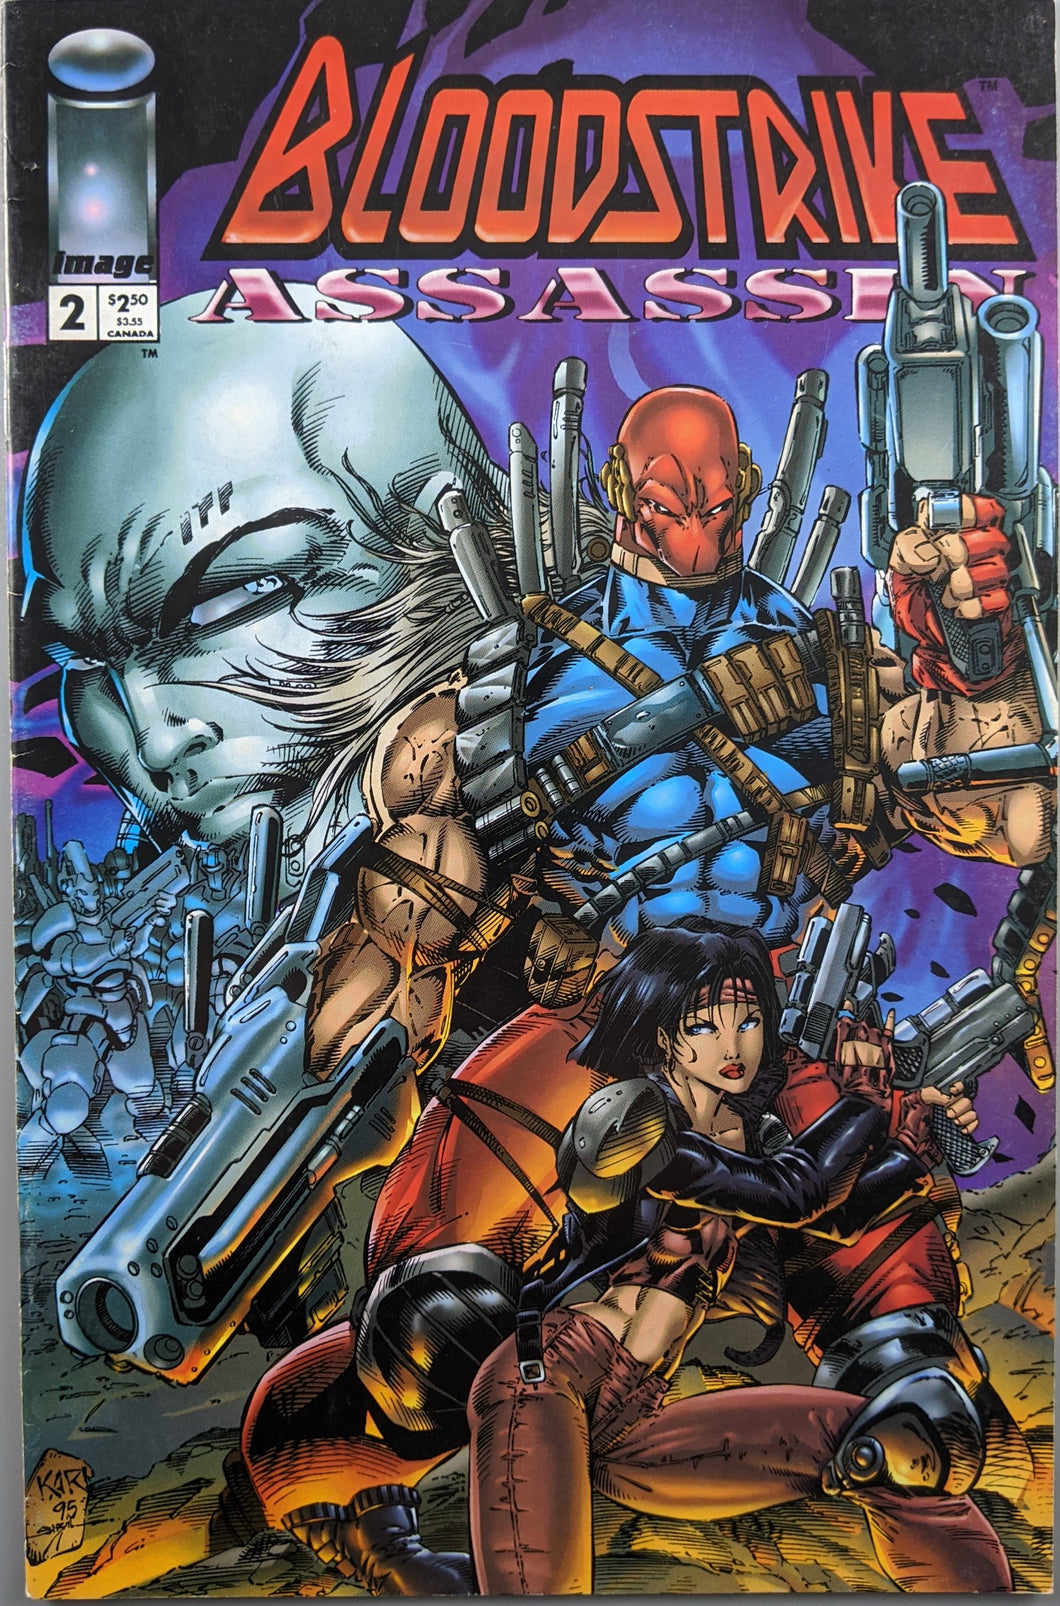 Bloodstrike Assassin (1995) #2